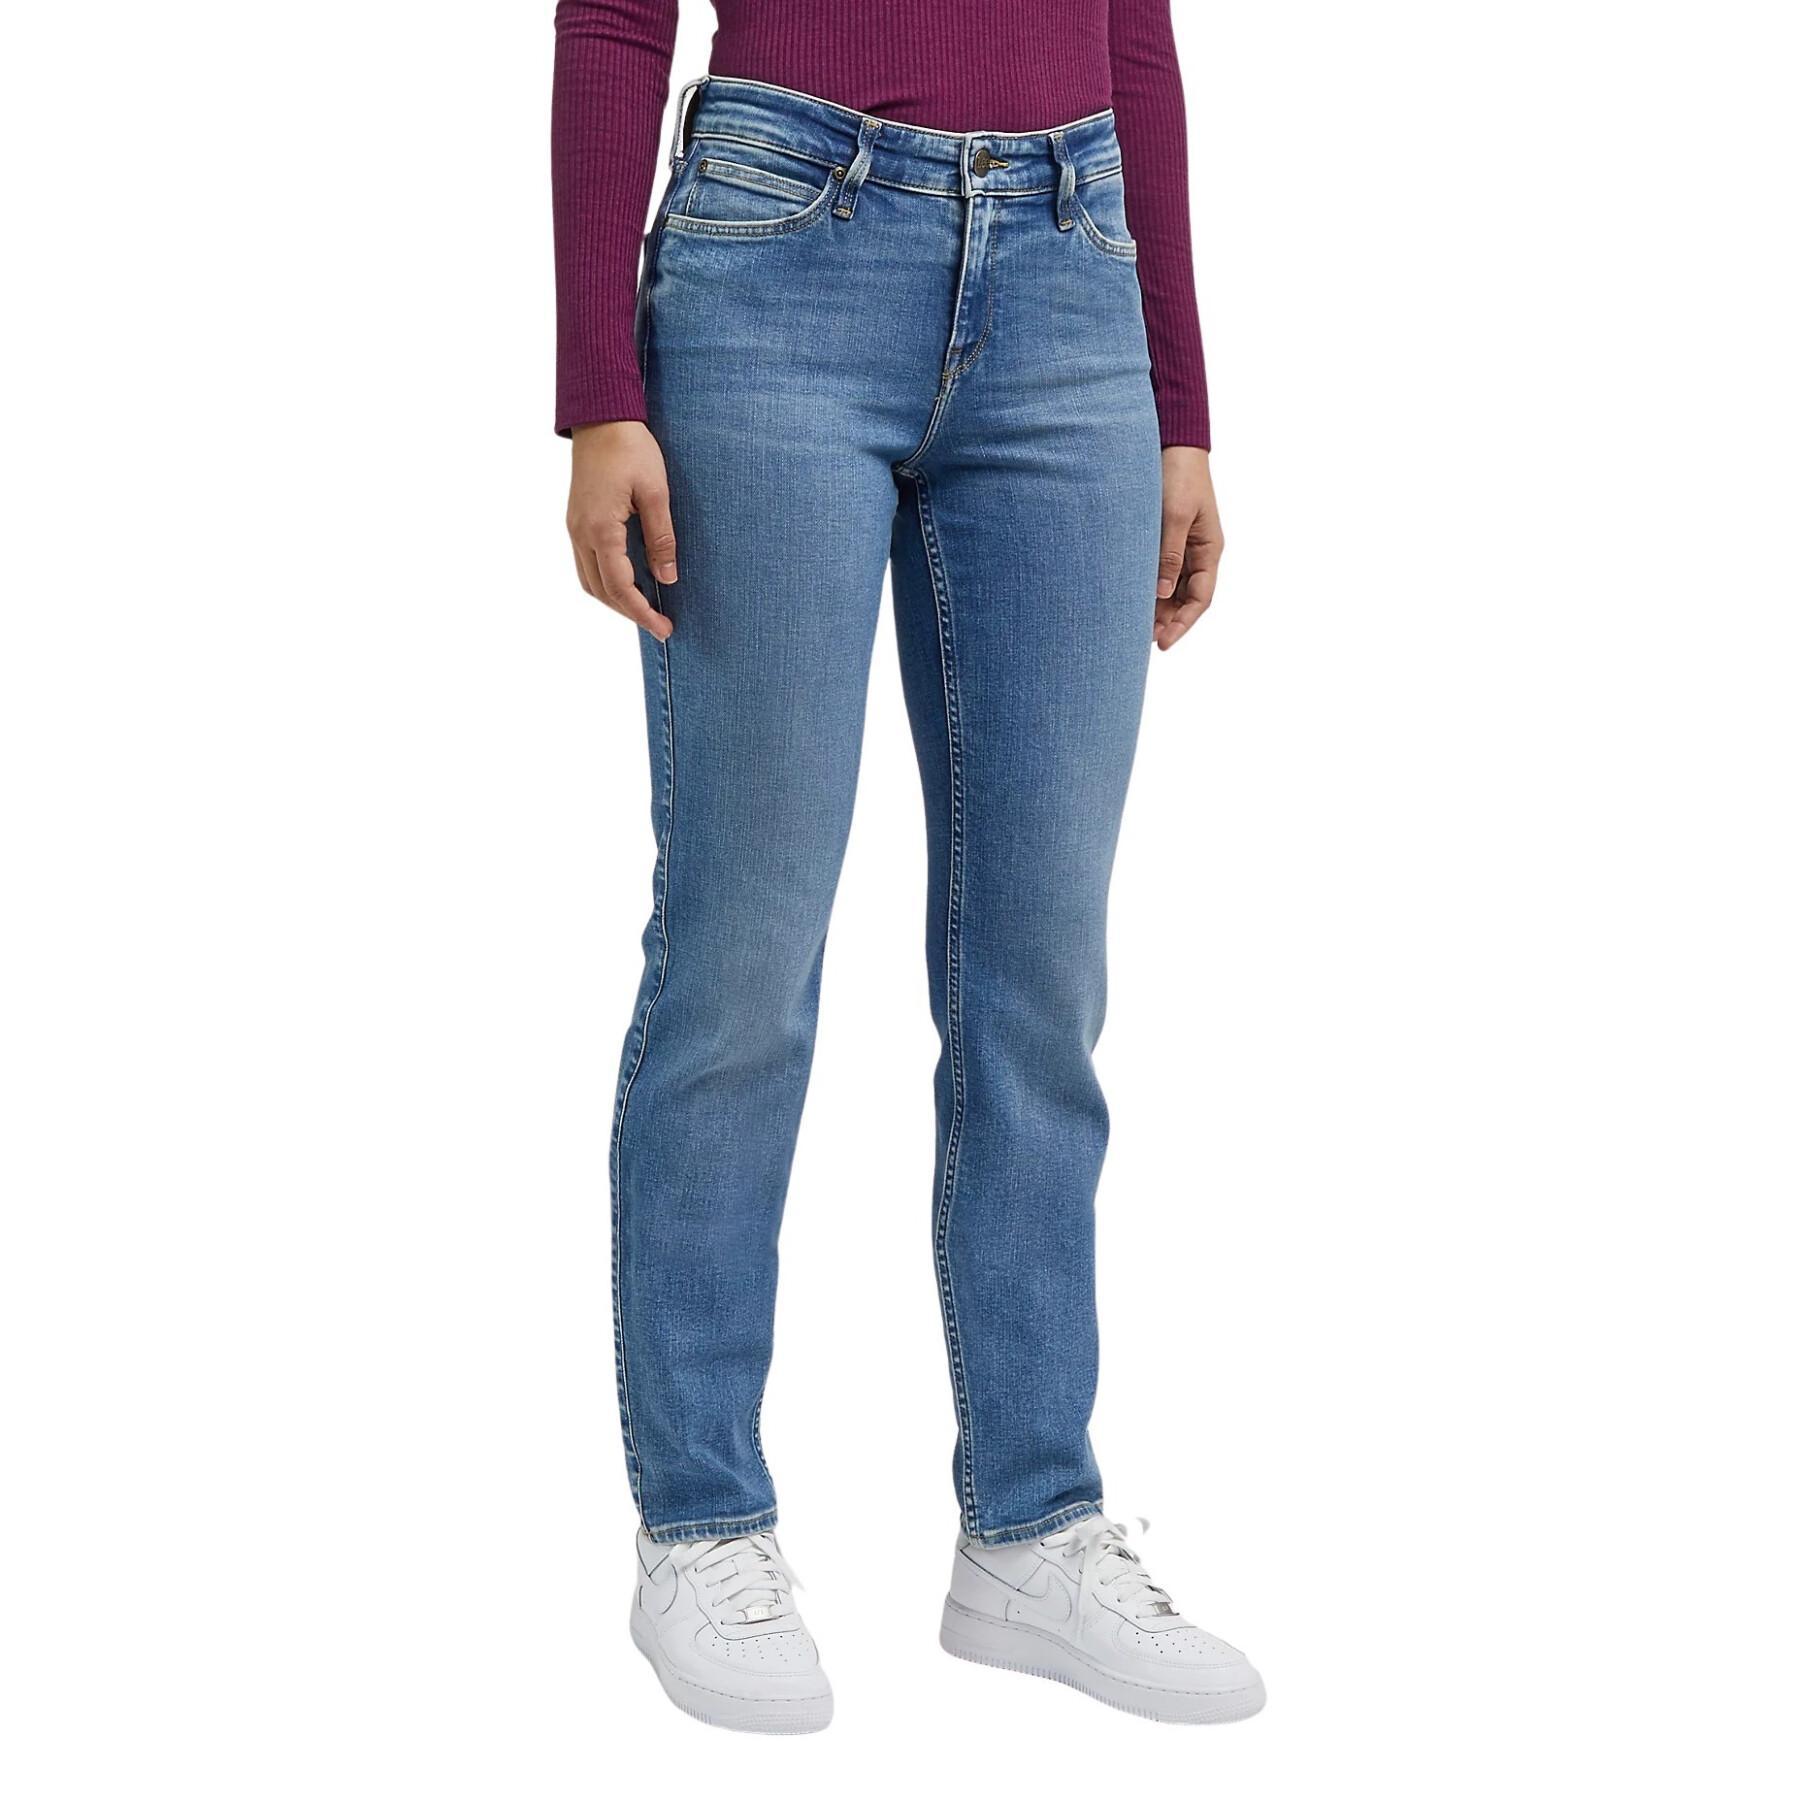 Rechte jeans voor dames Lee Marion